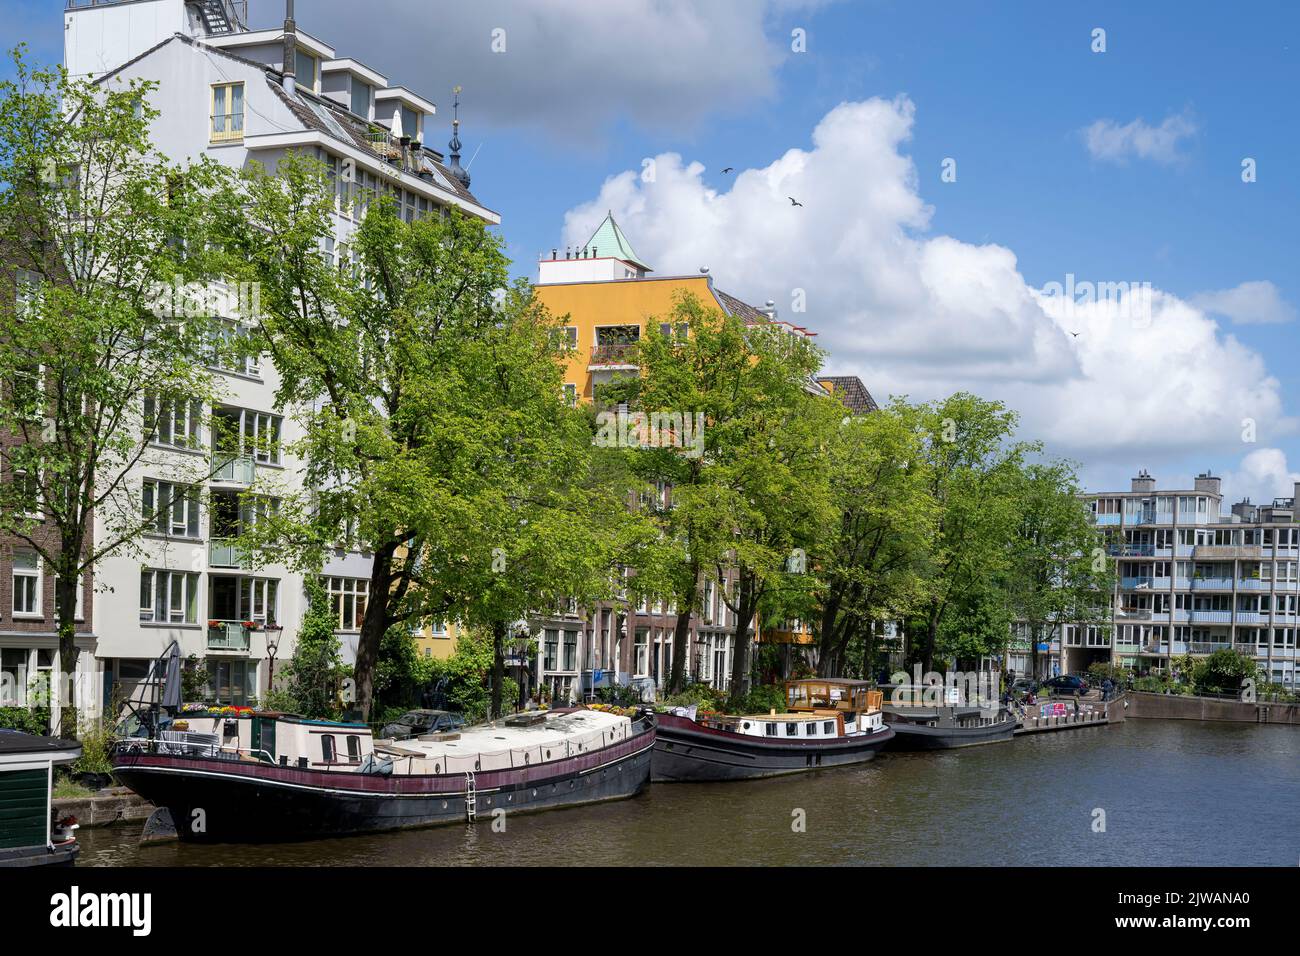 Bateaux dans les canaux d'Amsterdam en Hollande. Banque D'Images